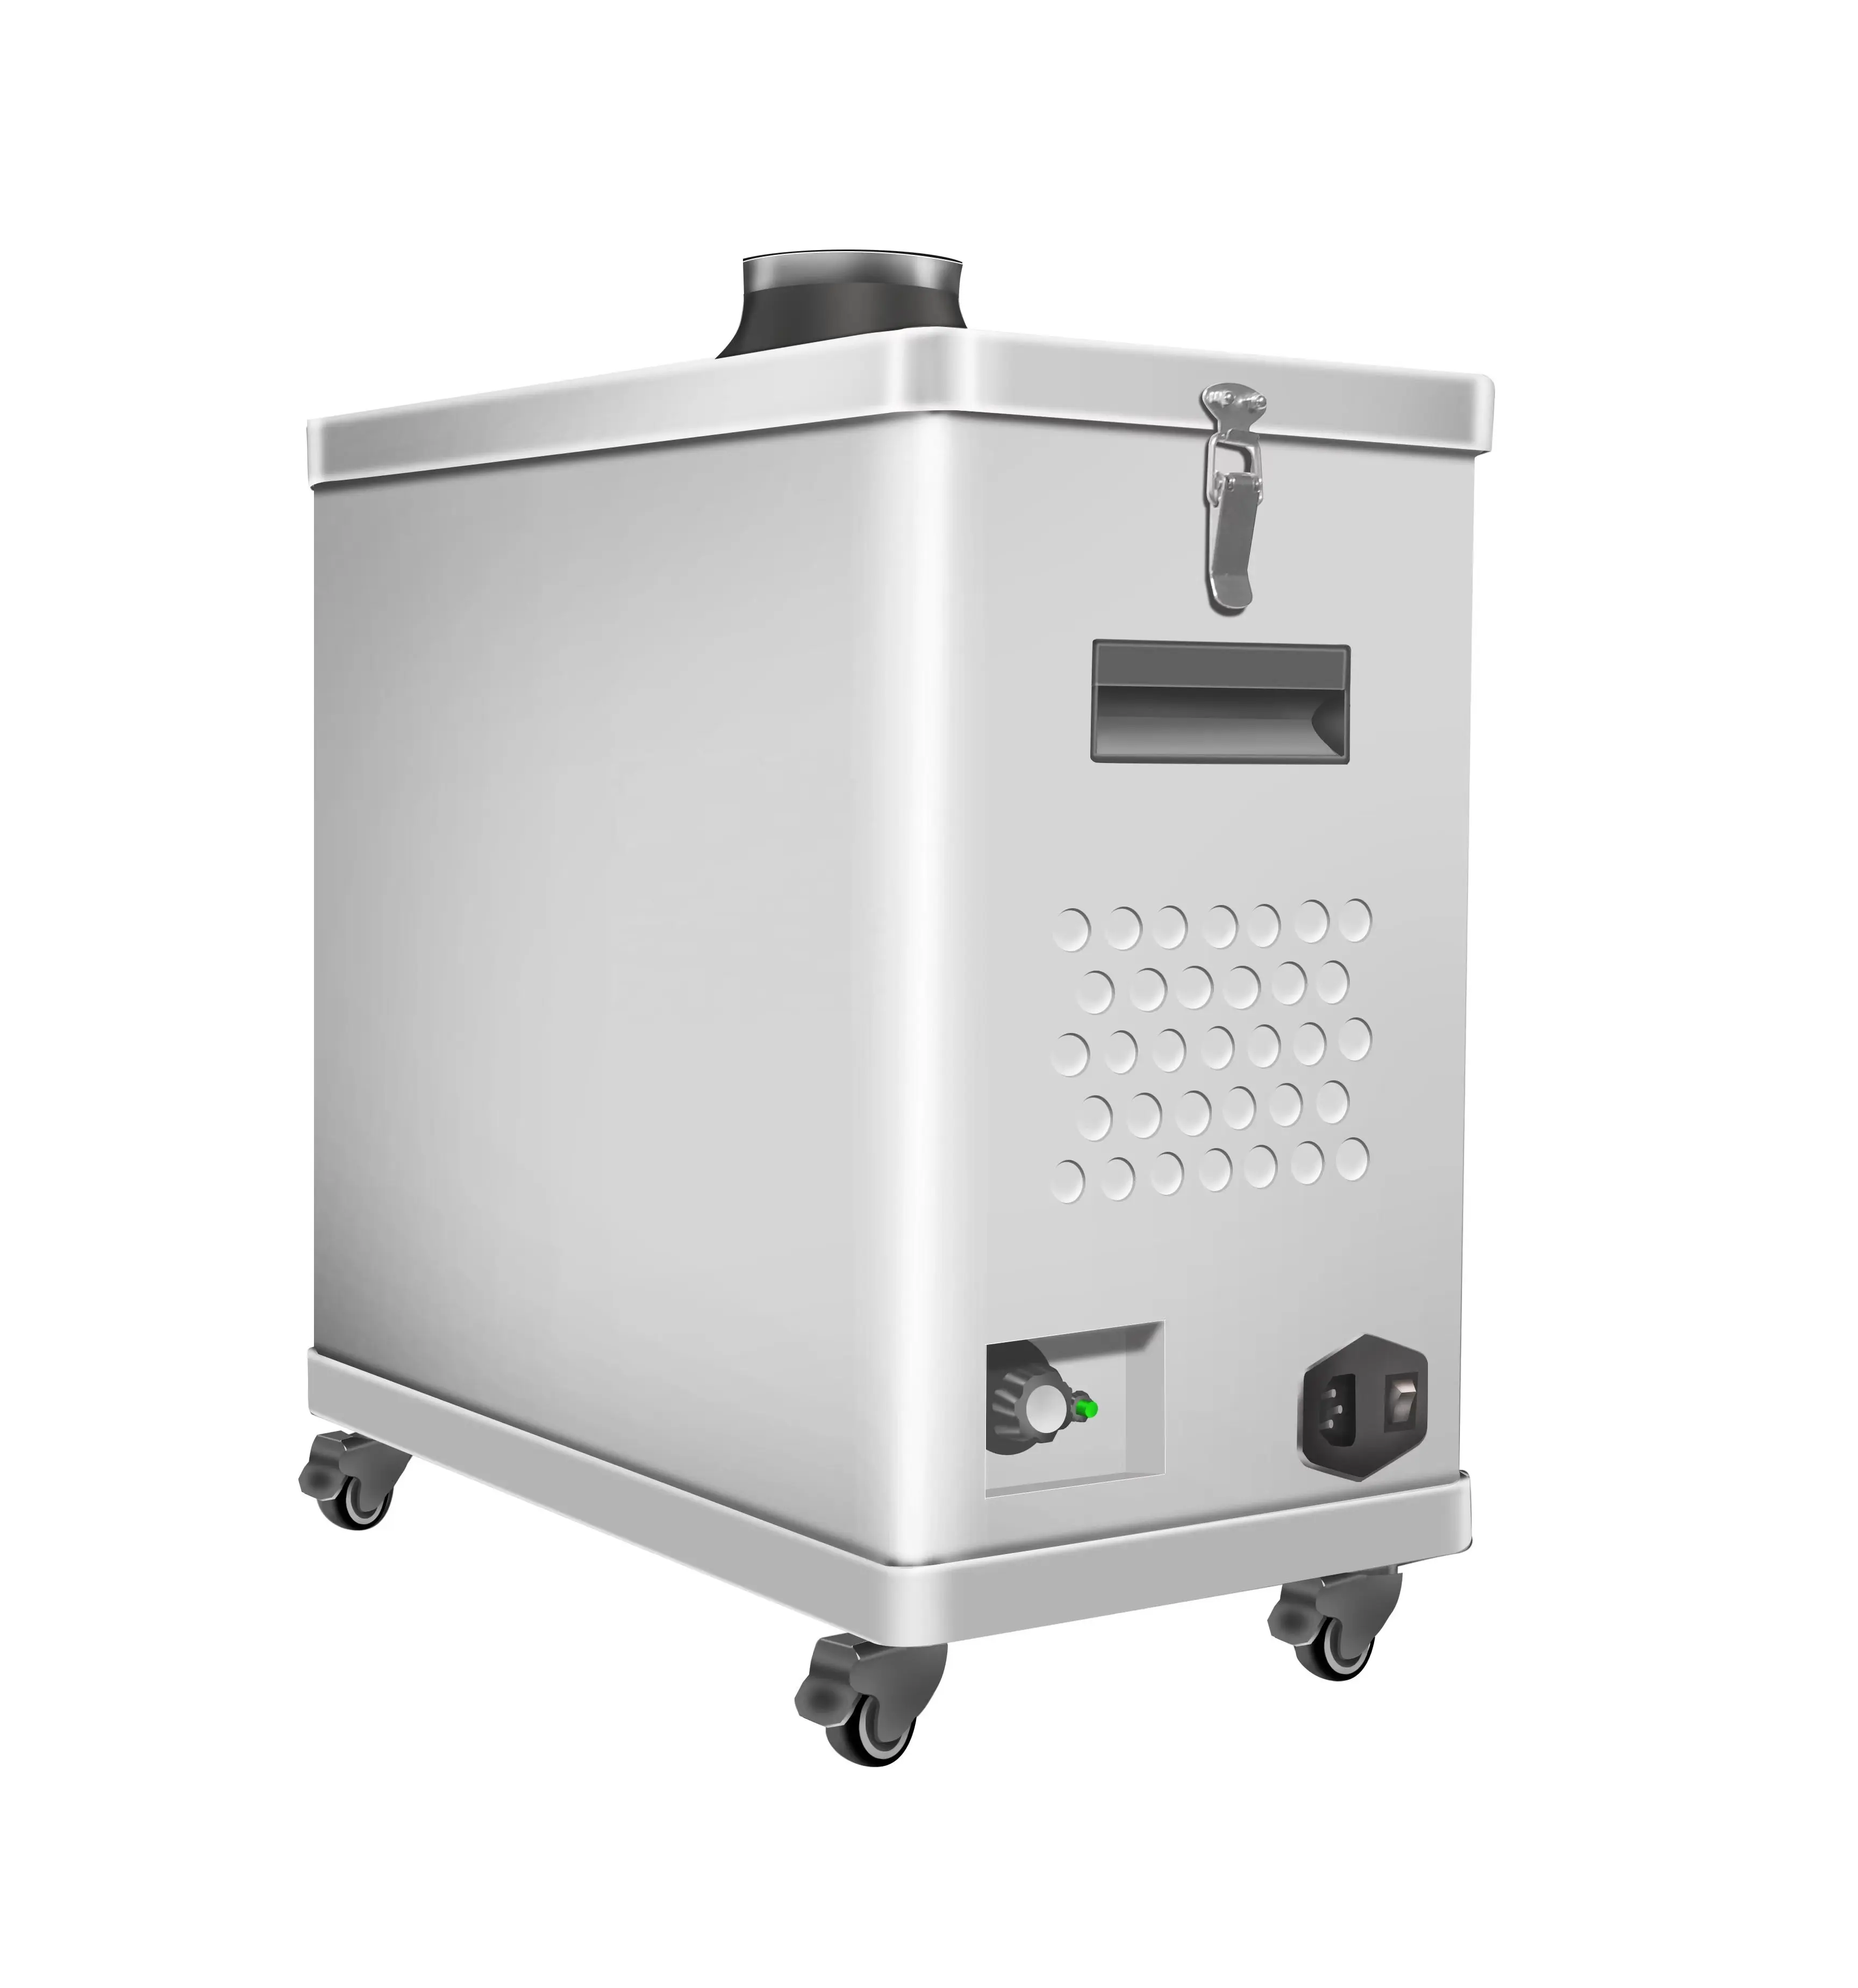 Offre Spéciale DTF filtre absorbeur de fumée extracteur purificateur d'air pour four DTF poudre Shaker Machine